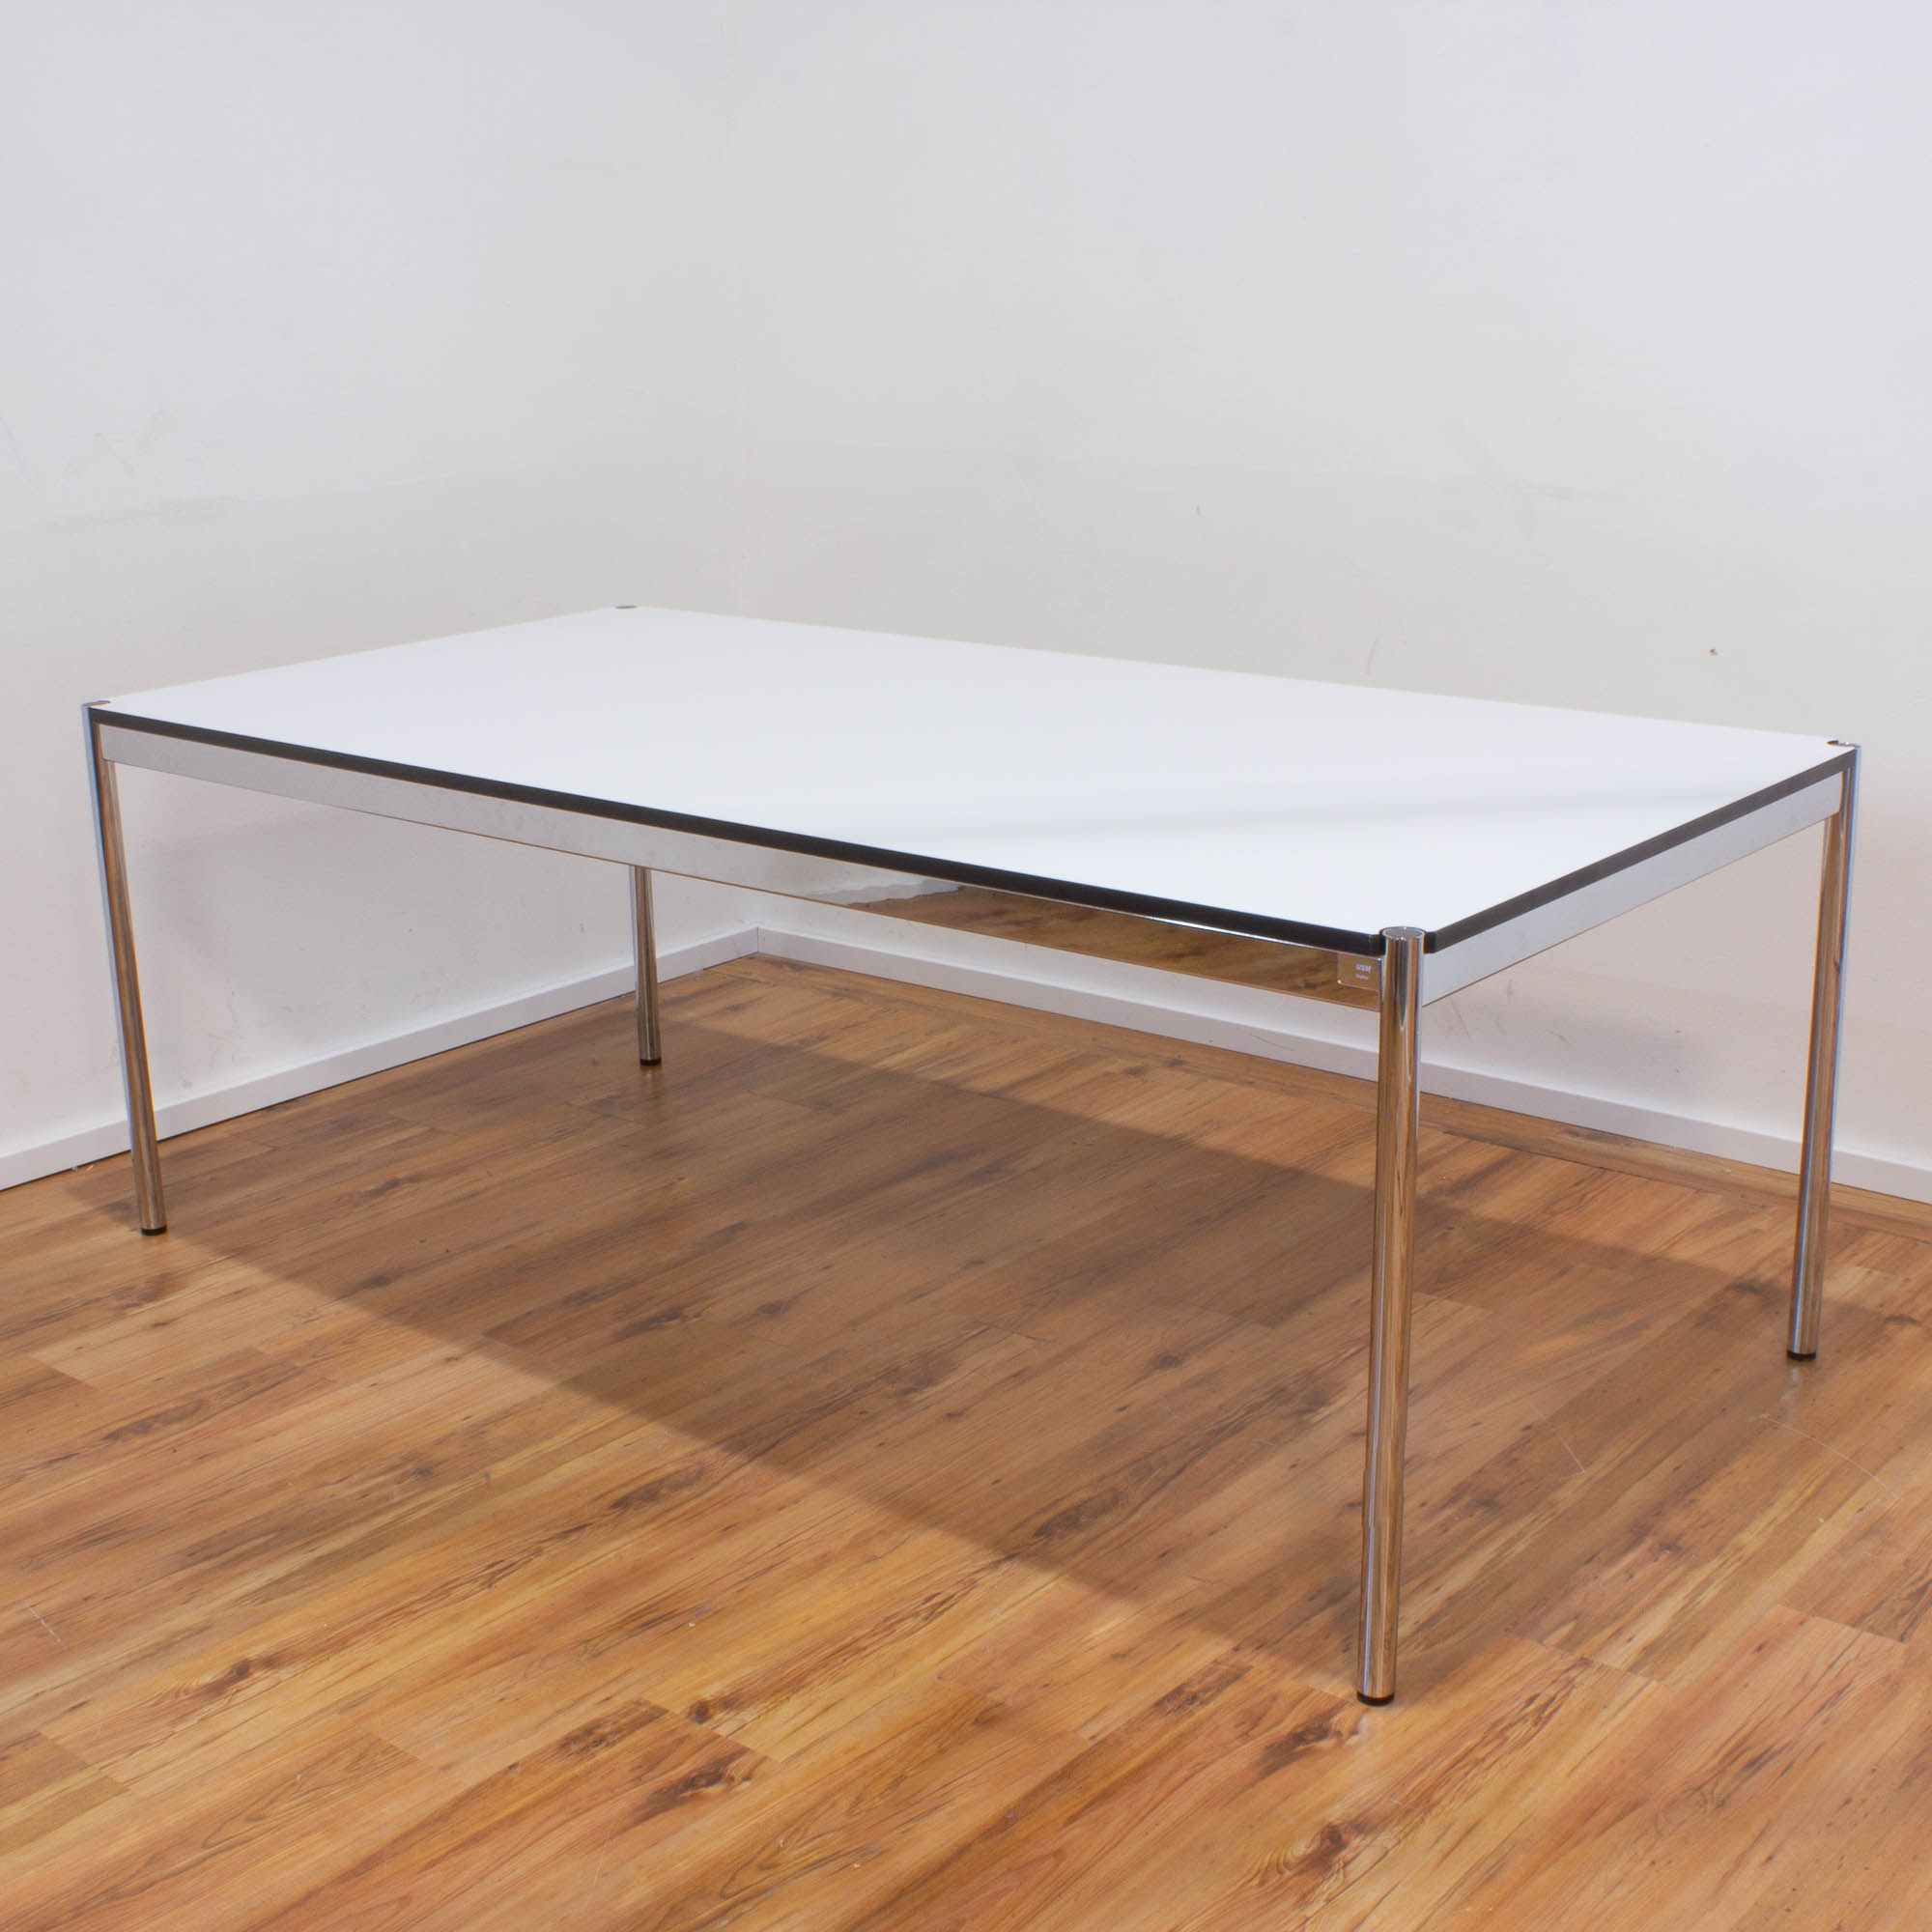 USM Haller Schreibtisch 200 x 100 cm - Tischplatte weiß - Gestell 4-Fuß chrom